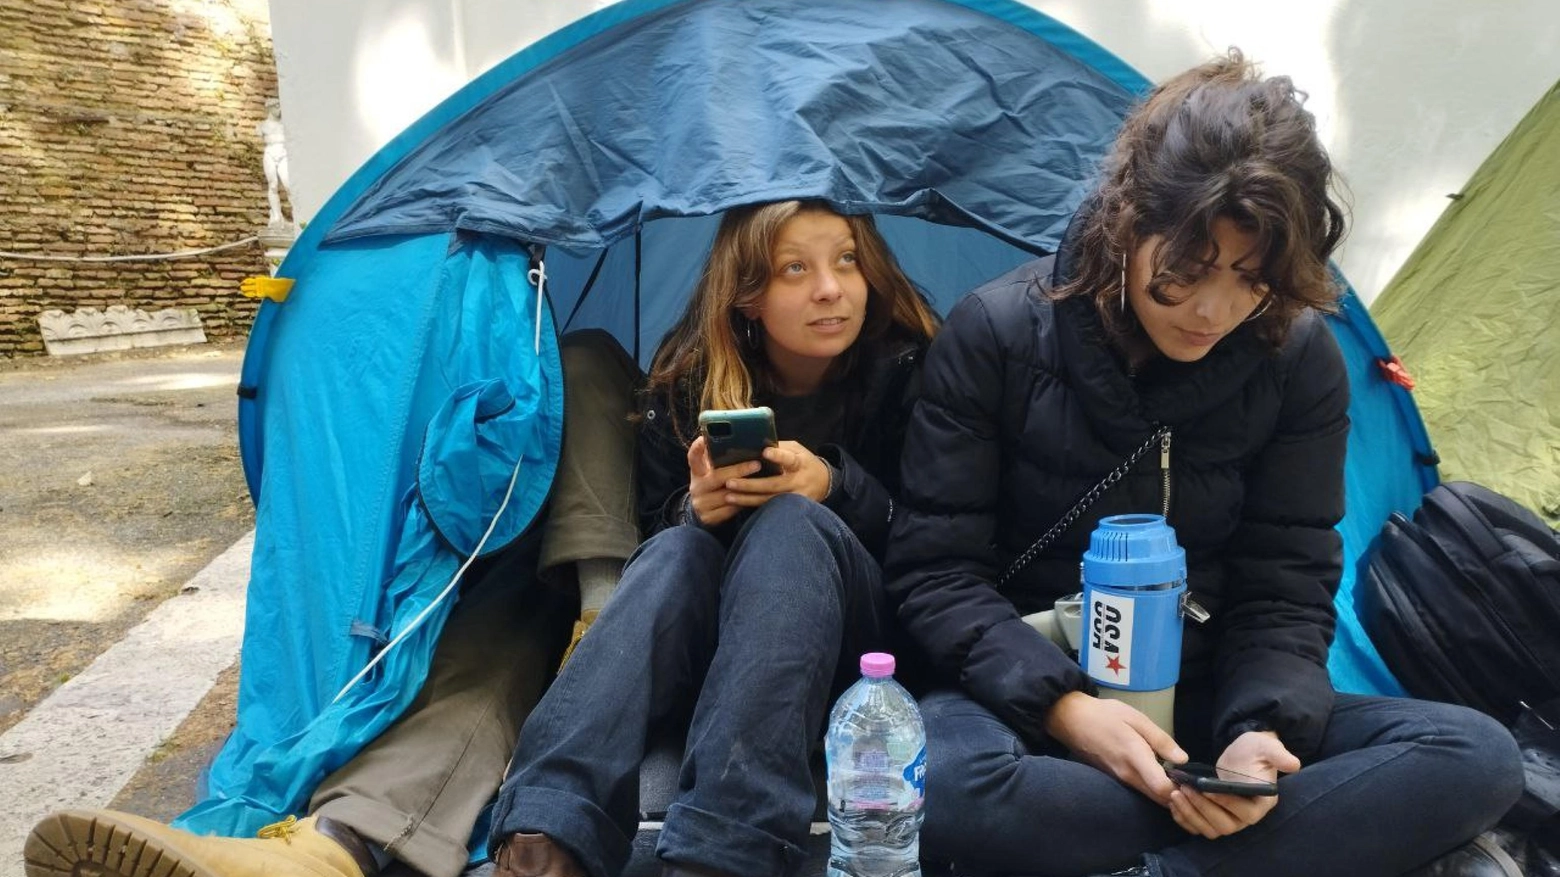 Caro affitti: studenti in tenda protestano davanti Miur a Roma, 'siamo stanchi'